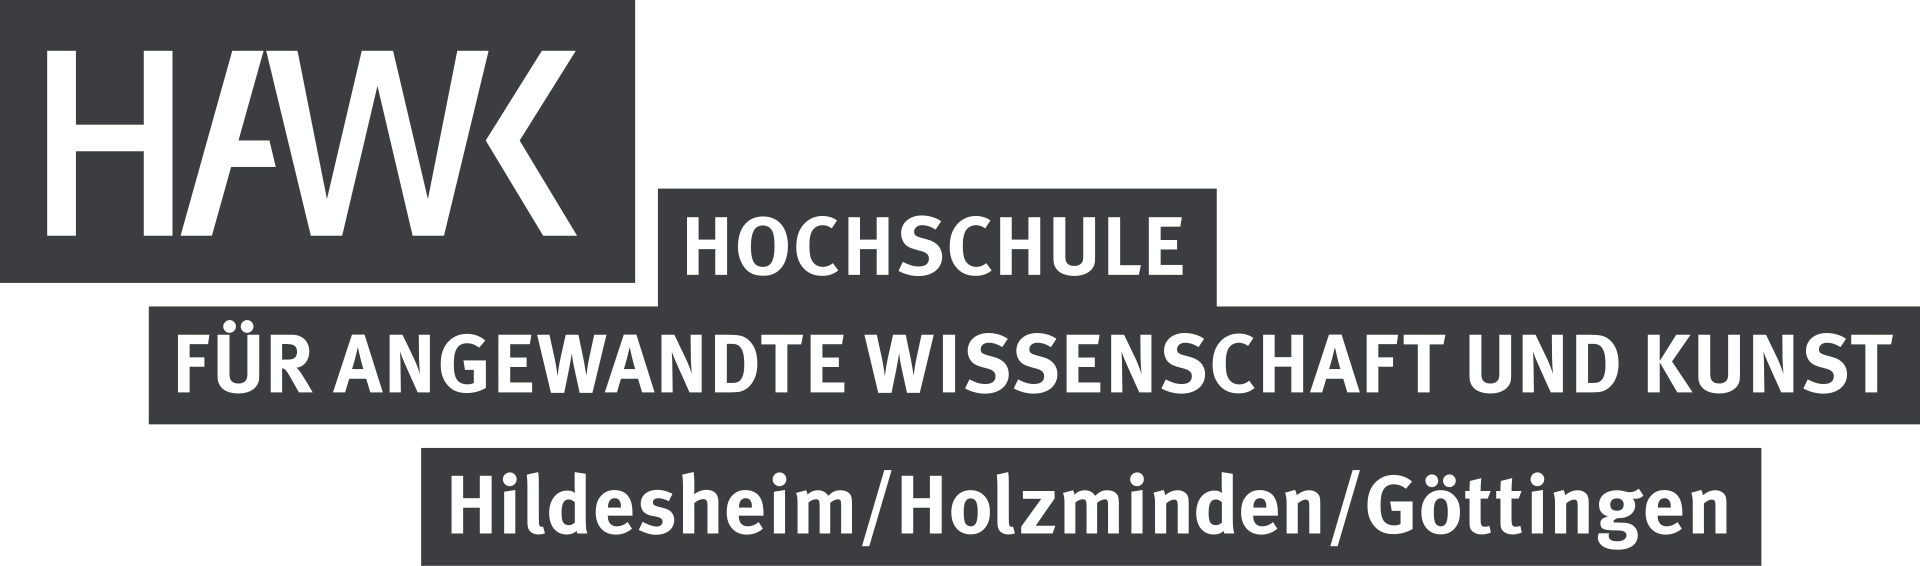 希尔德斯海姆/霍尔茨明登/哥廷根应用技术和艺术学院